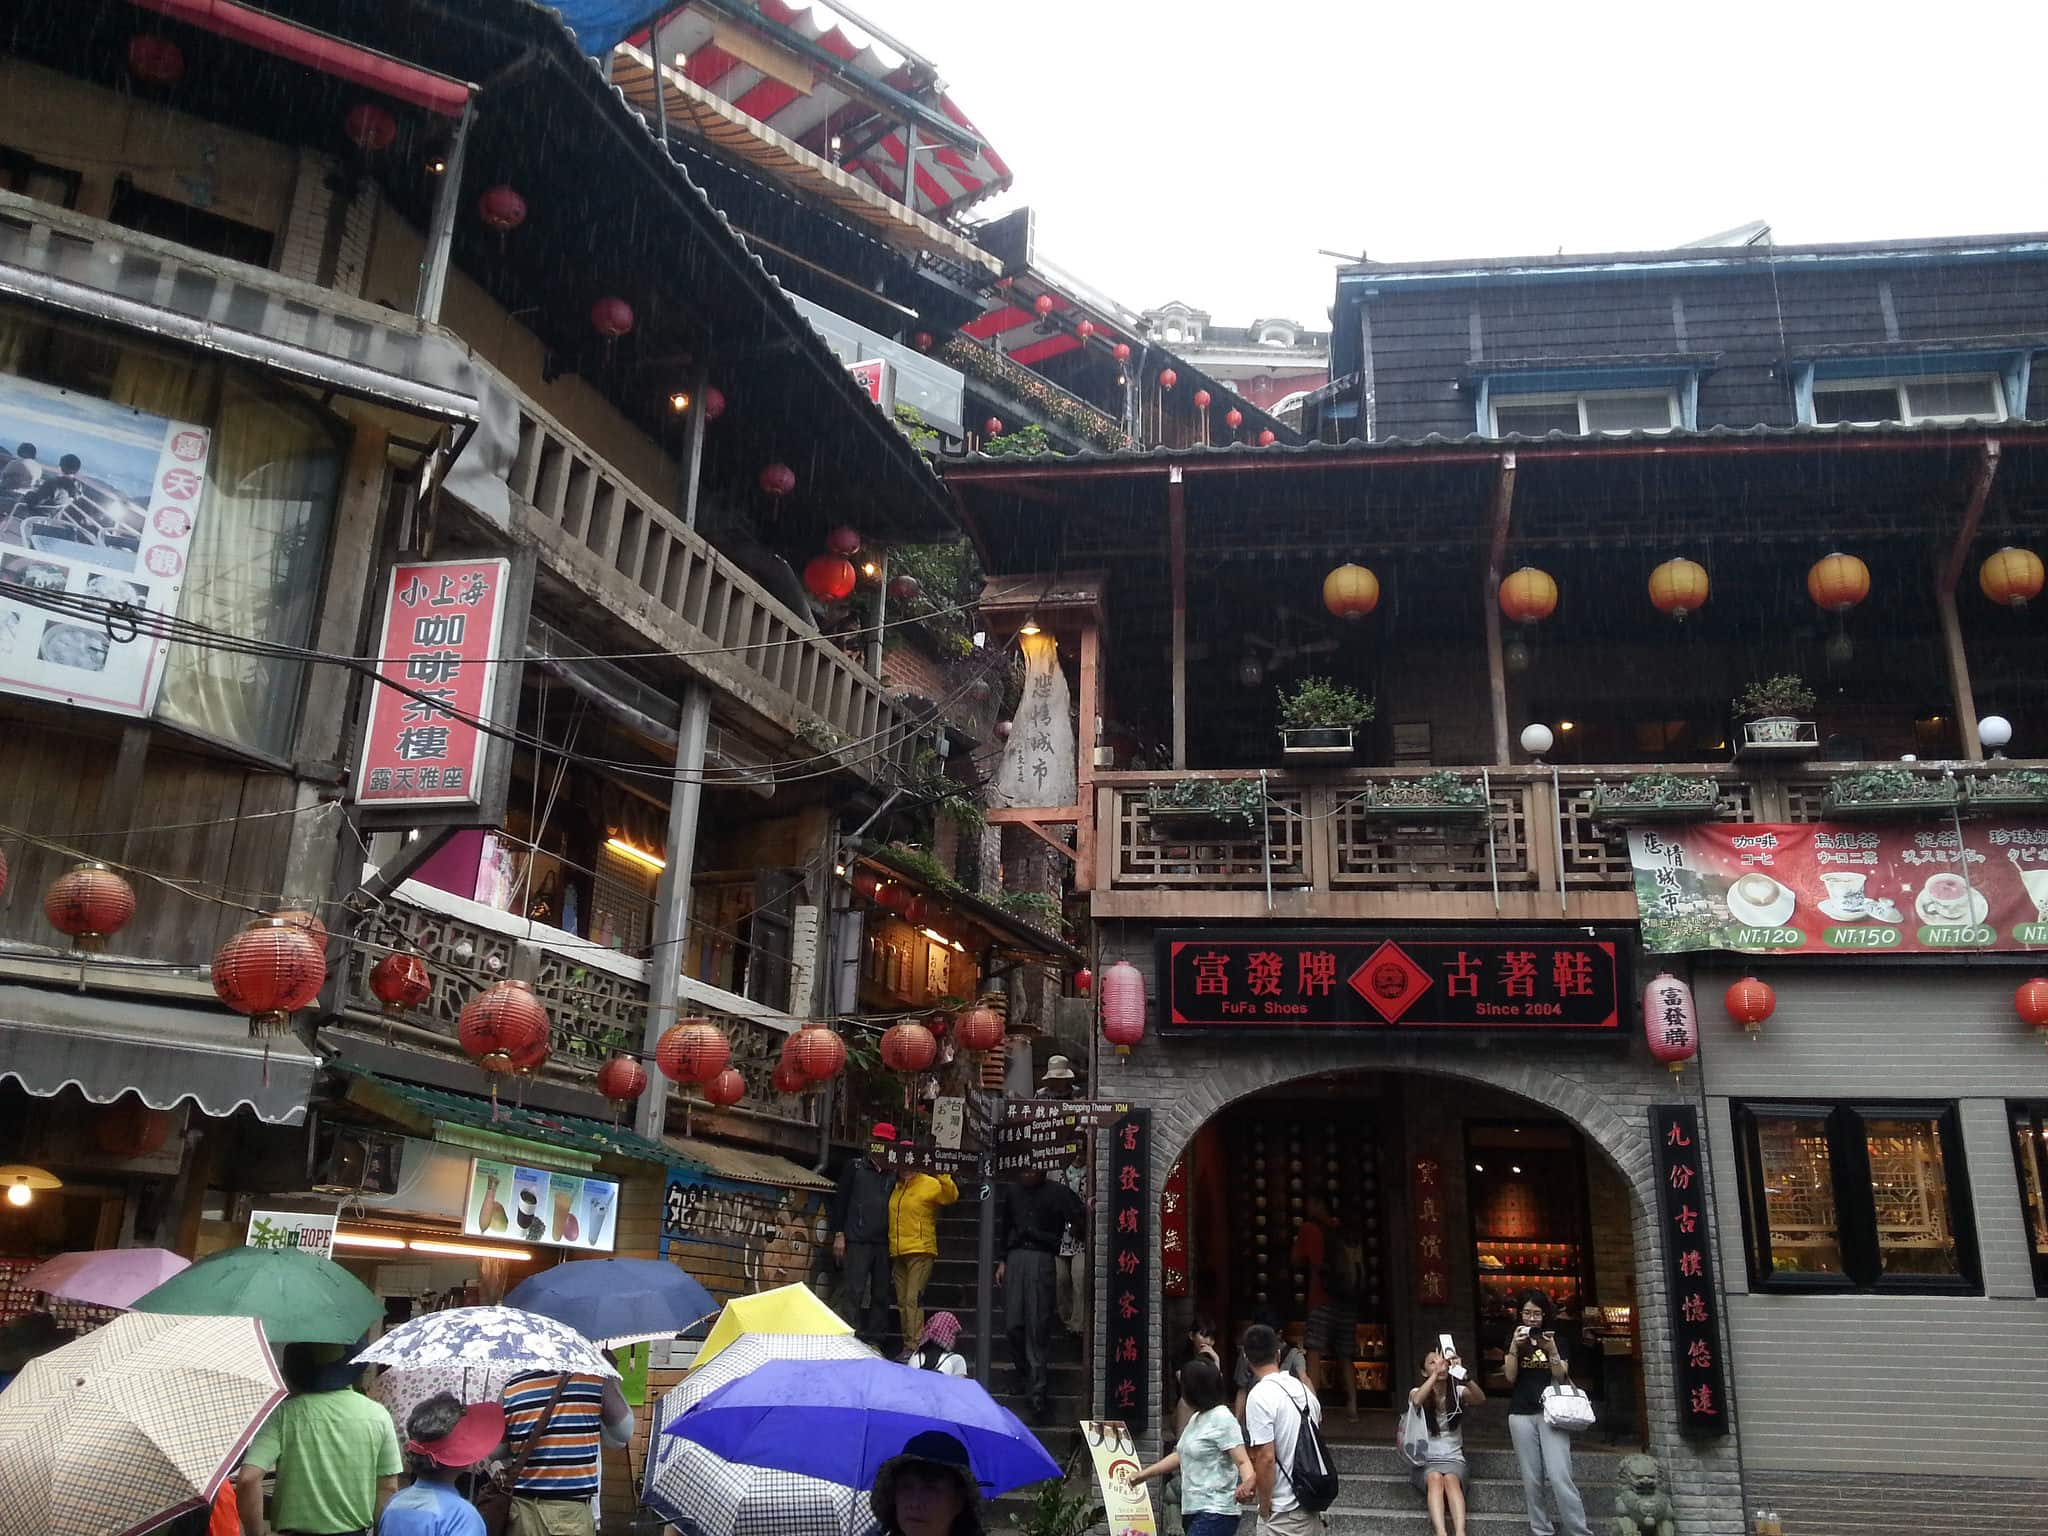 20 Địa điểm du lịch Đài Loan đẹp và nổi tiếng nhất định phải tham quan